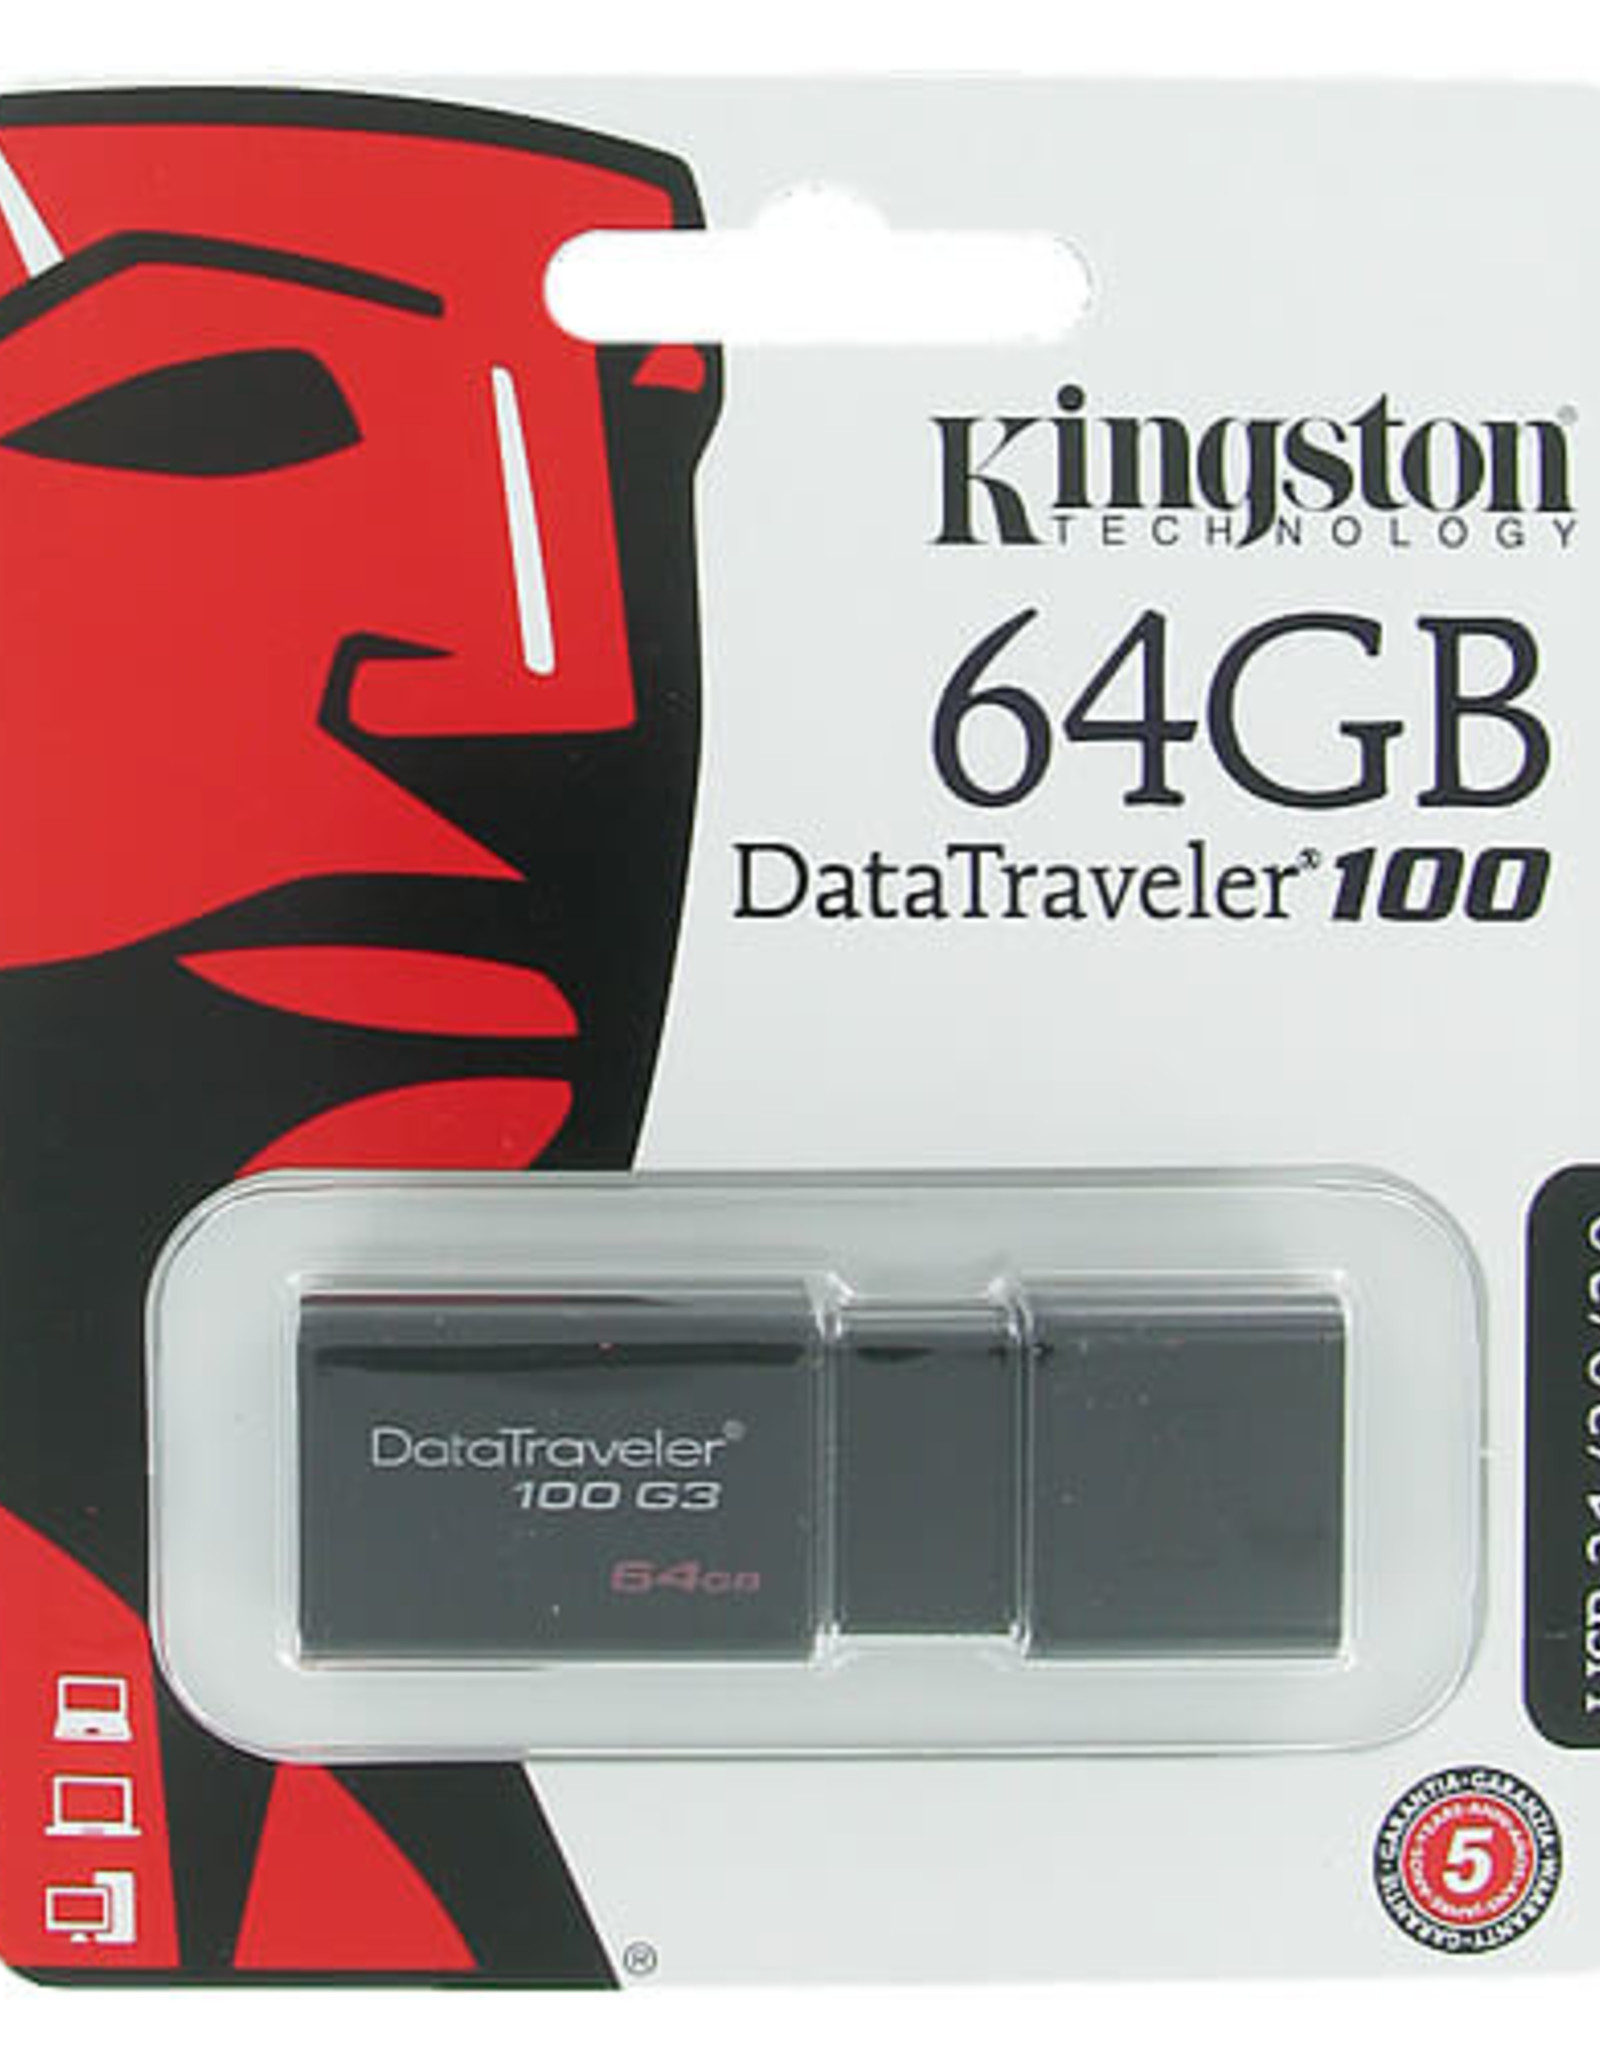 KINGSTON DATATRAVELER 100 G3 64GB USB 3.0 FLASH DRIVE